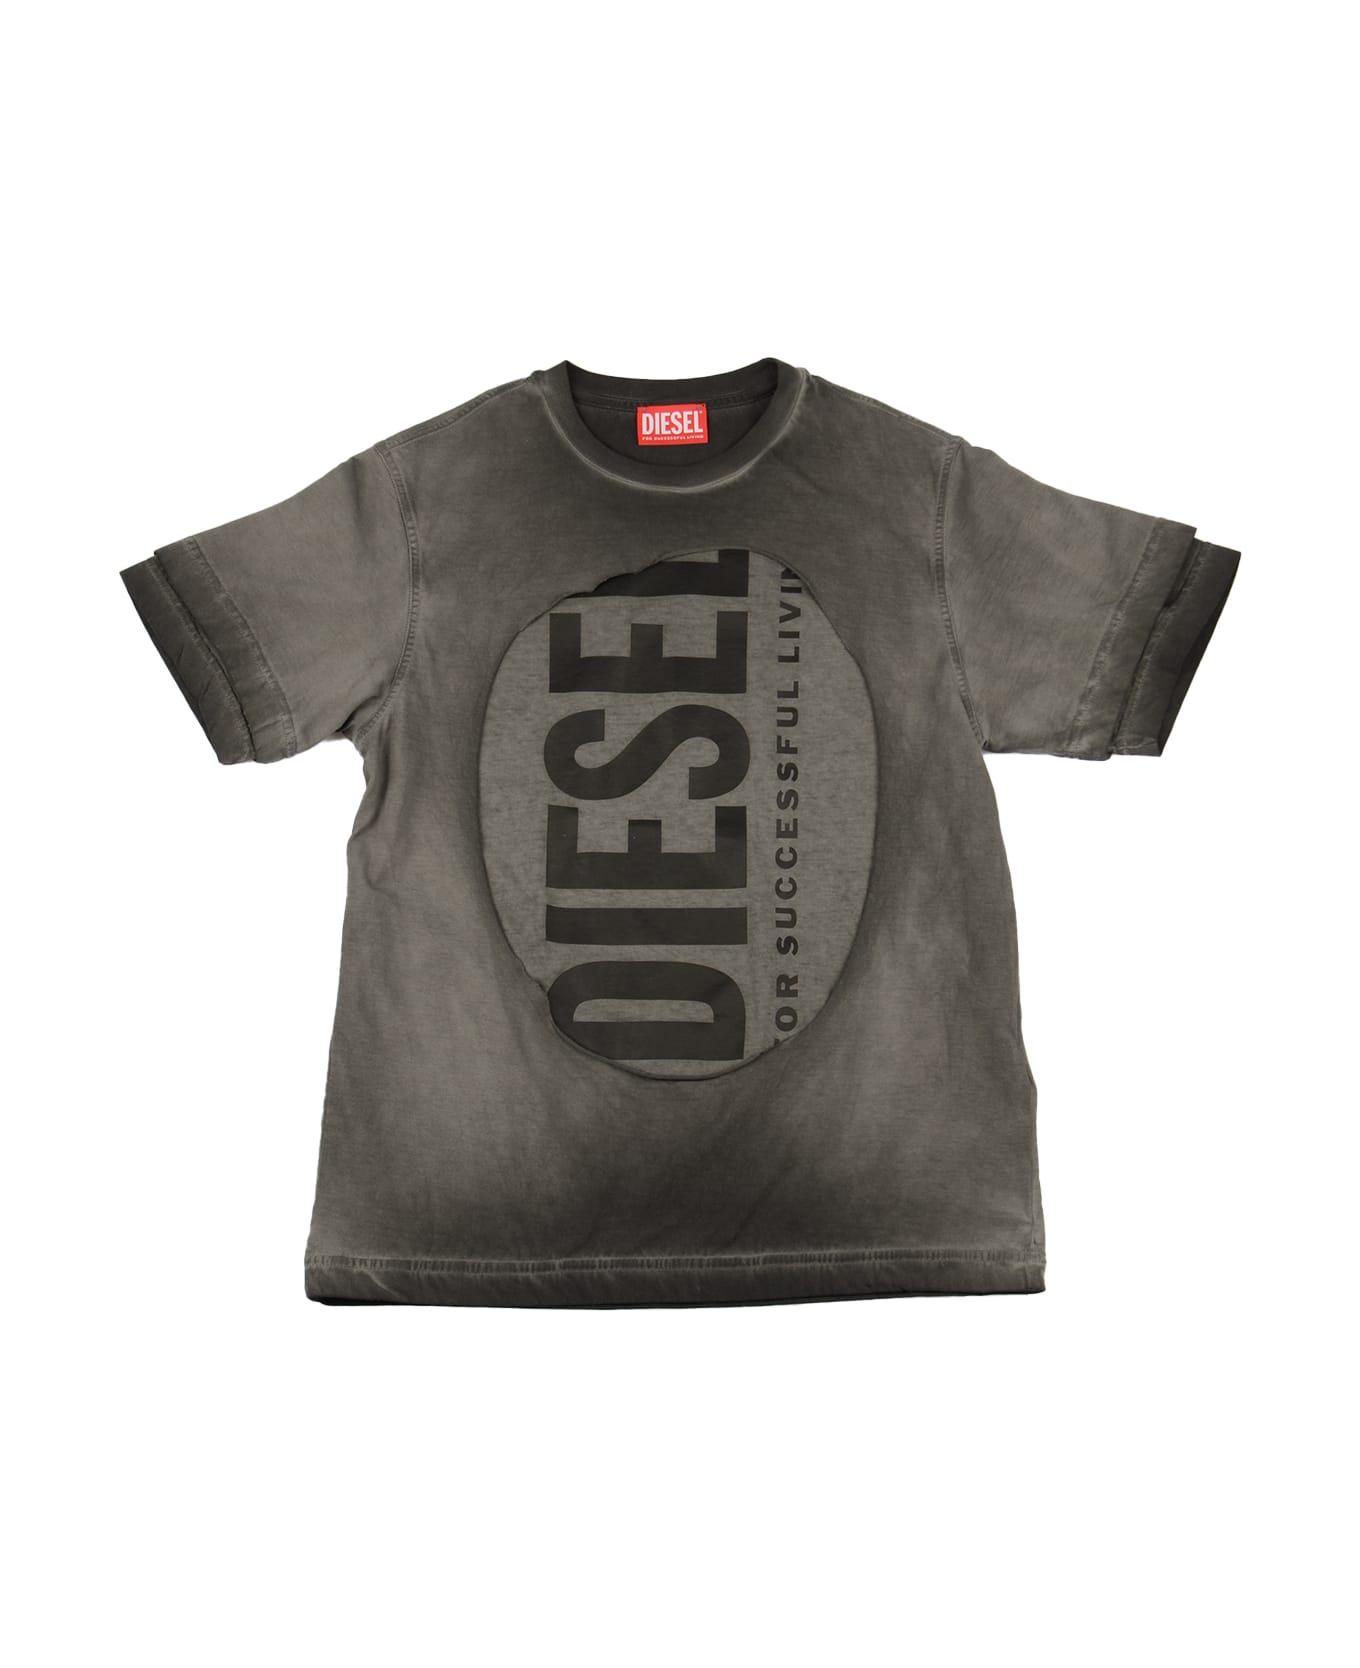 Diesel Tasy Over T-shirt